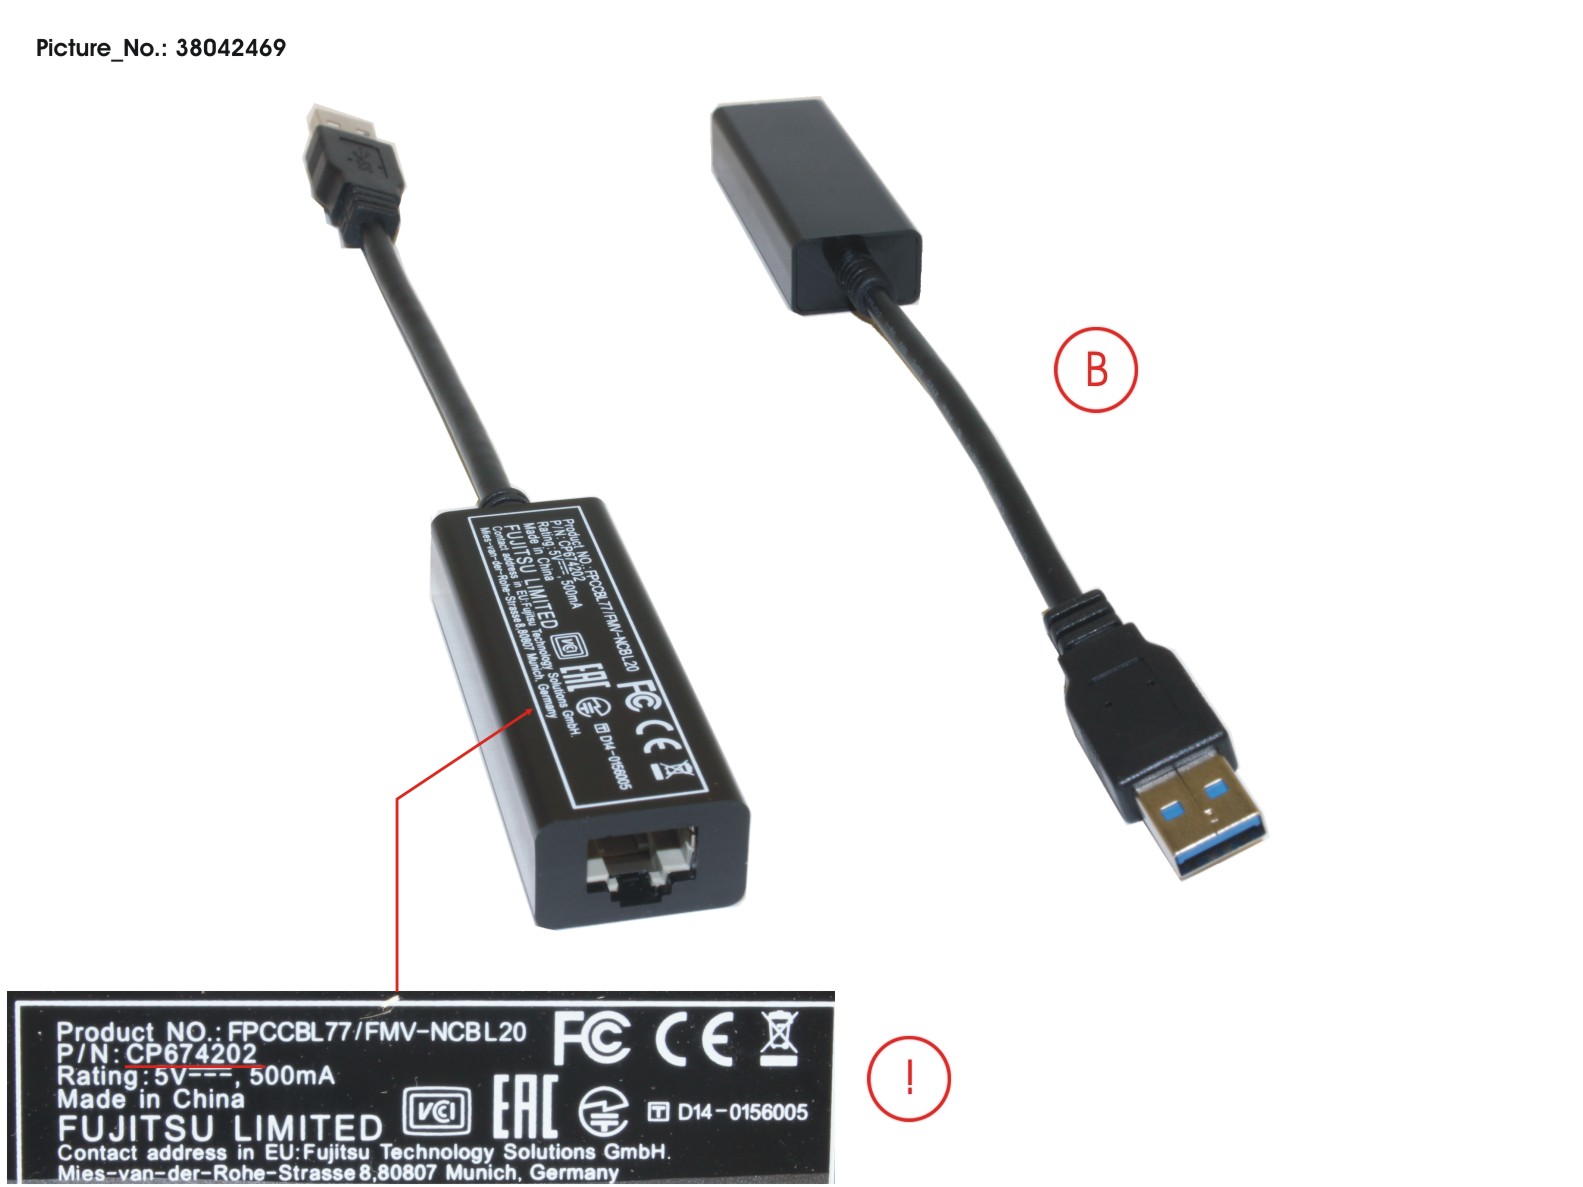 FUJITSU CABLE, LAN ADAPTER (USB TO LAN)